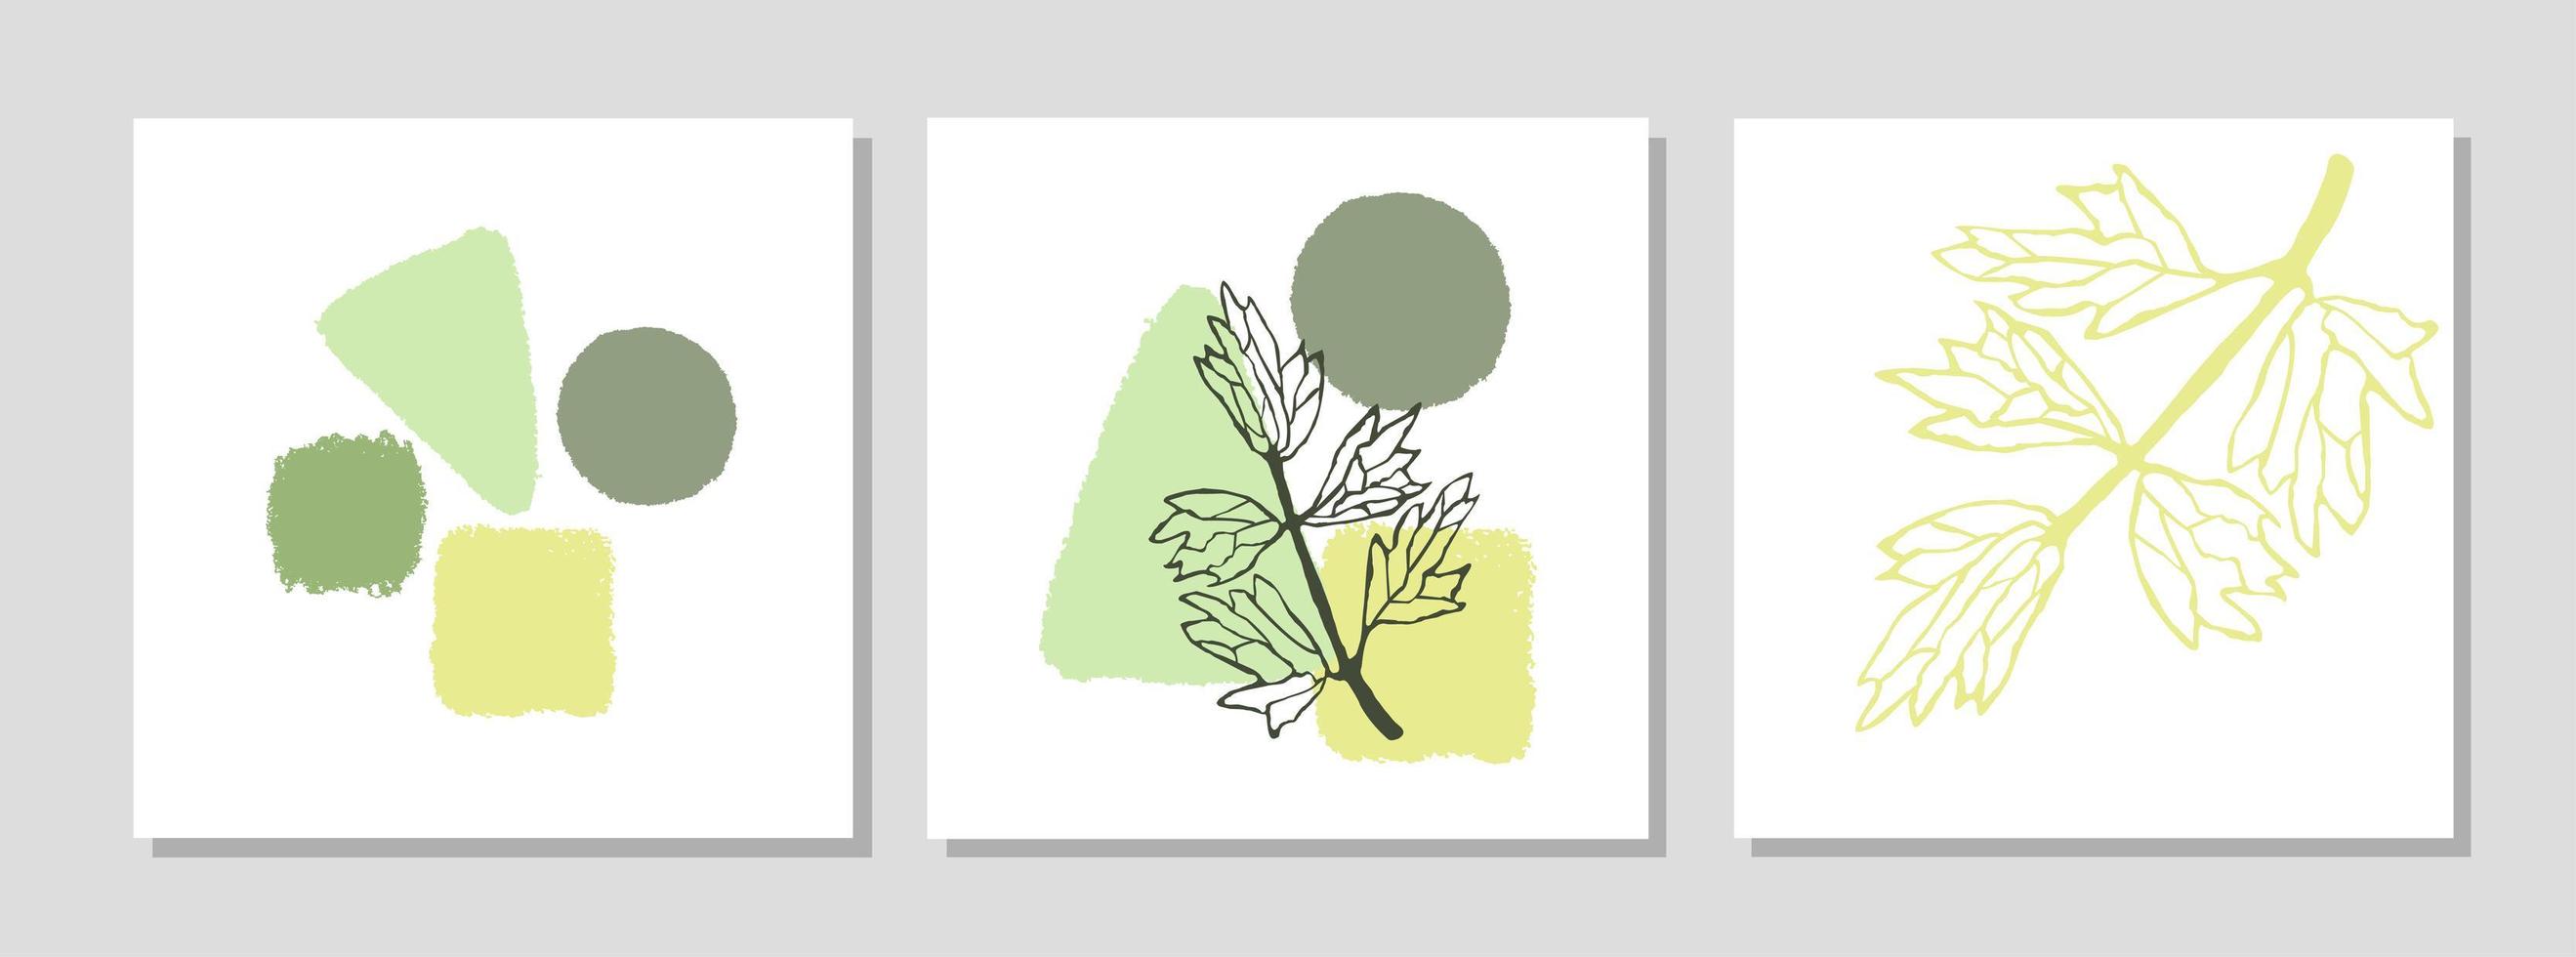 set mit collage modernes plakat mit abstrakten formen und illustration der pflanze vektor